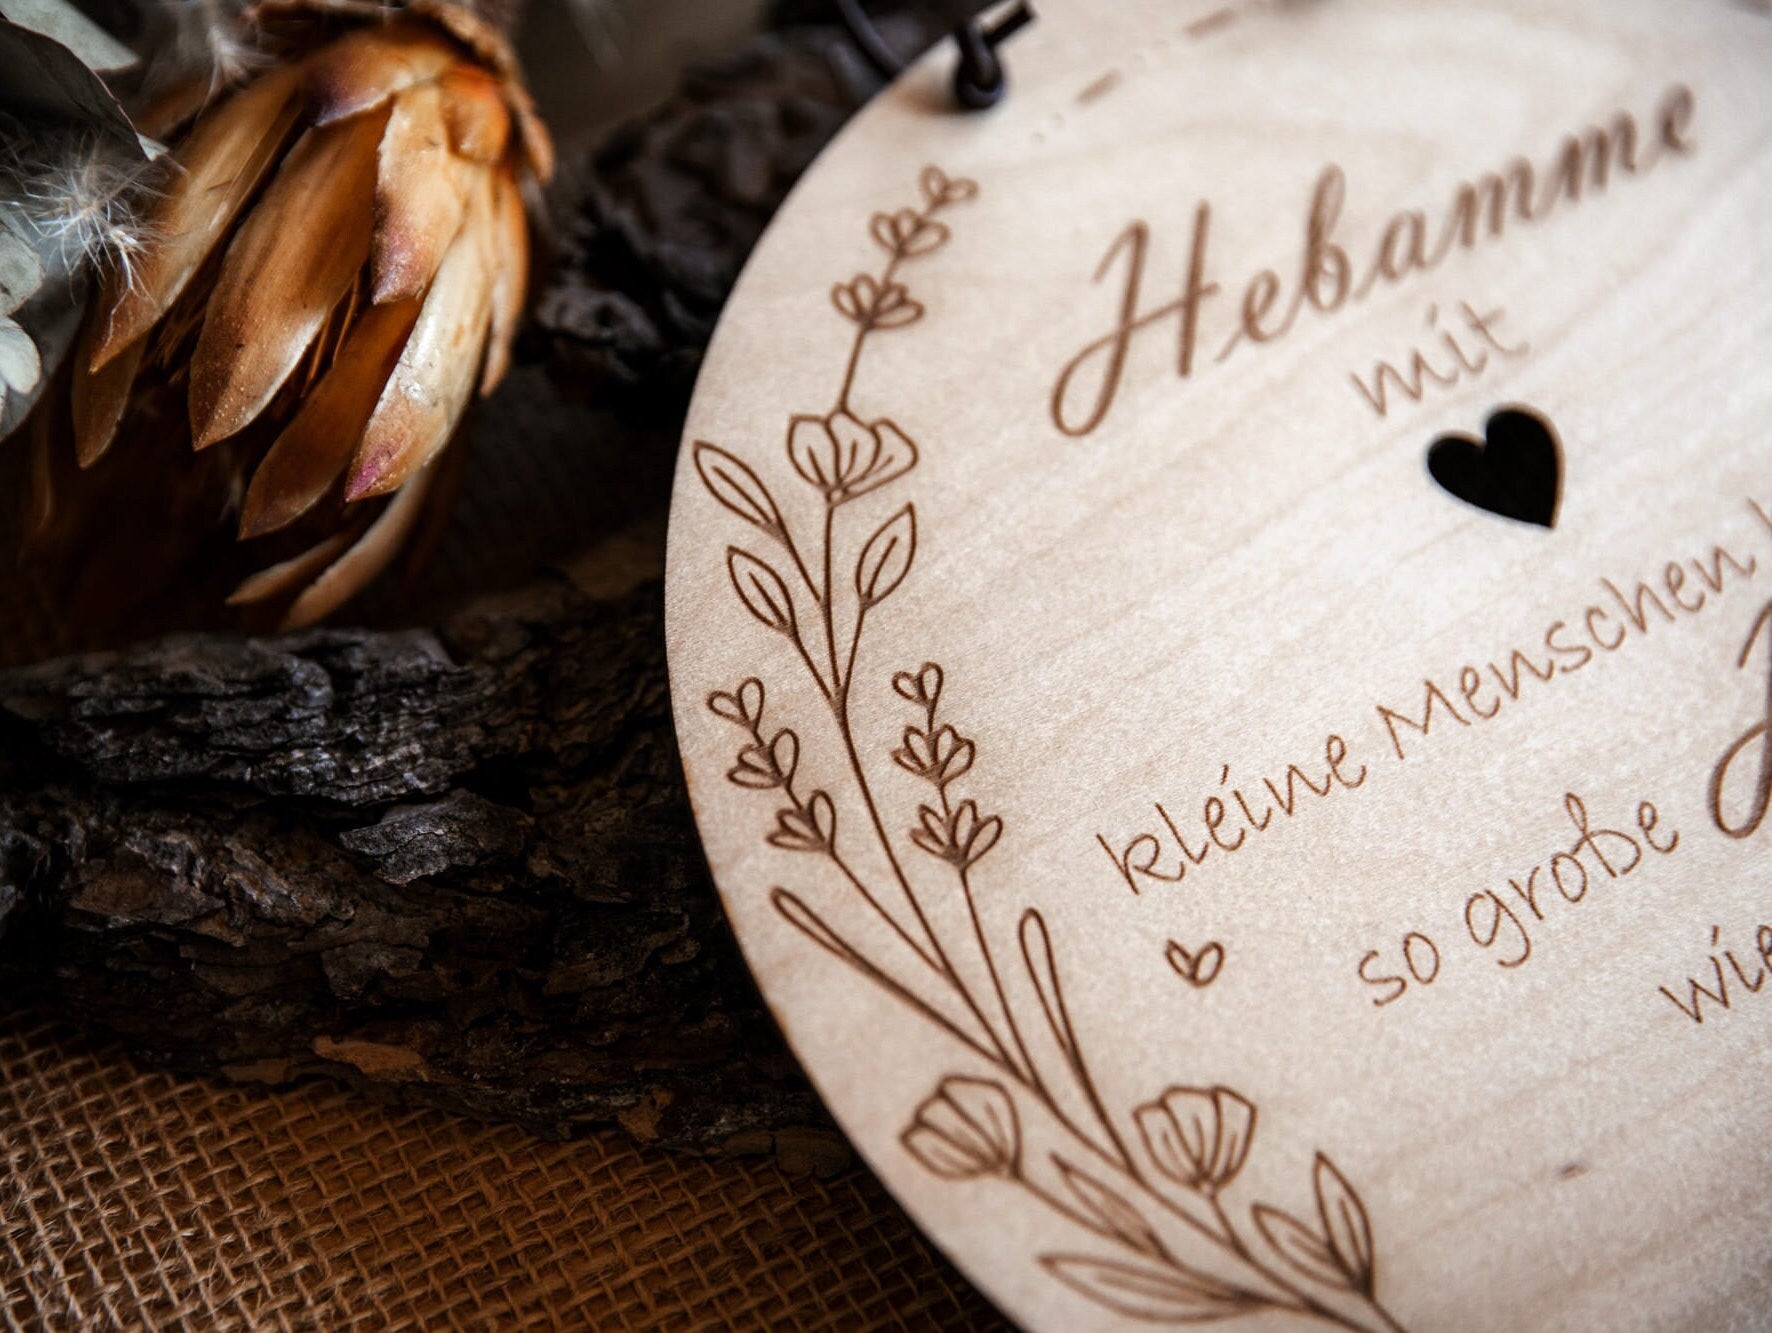 Geschenk für Hebamme / Holzschild personalisiert mit Namen / Kleine Menschen brauchen so große Herzen wie deins!